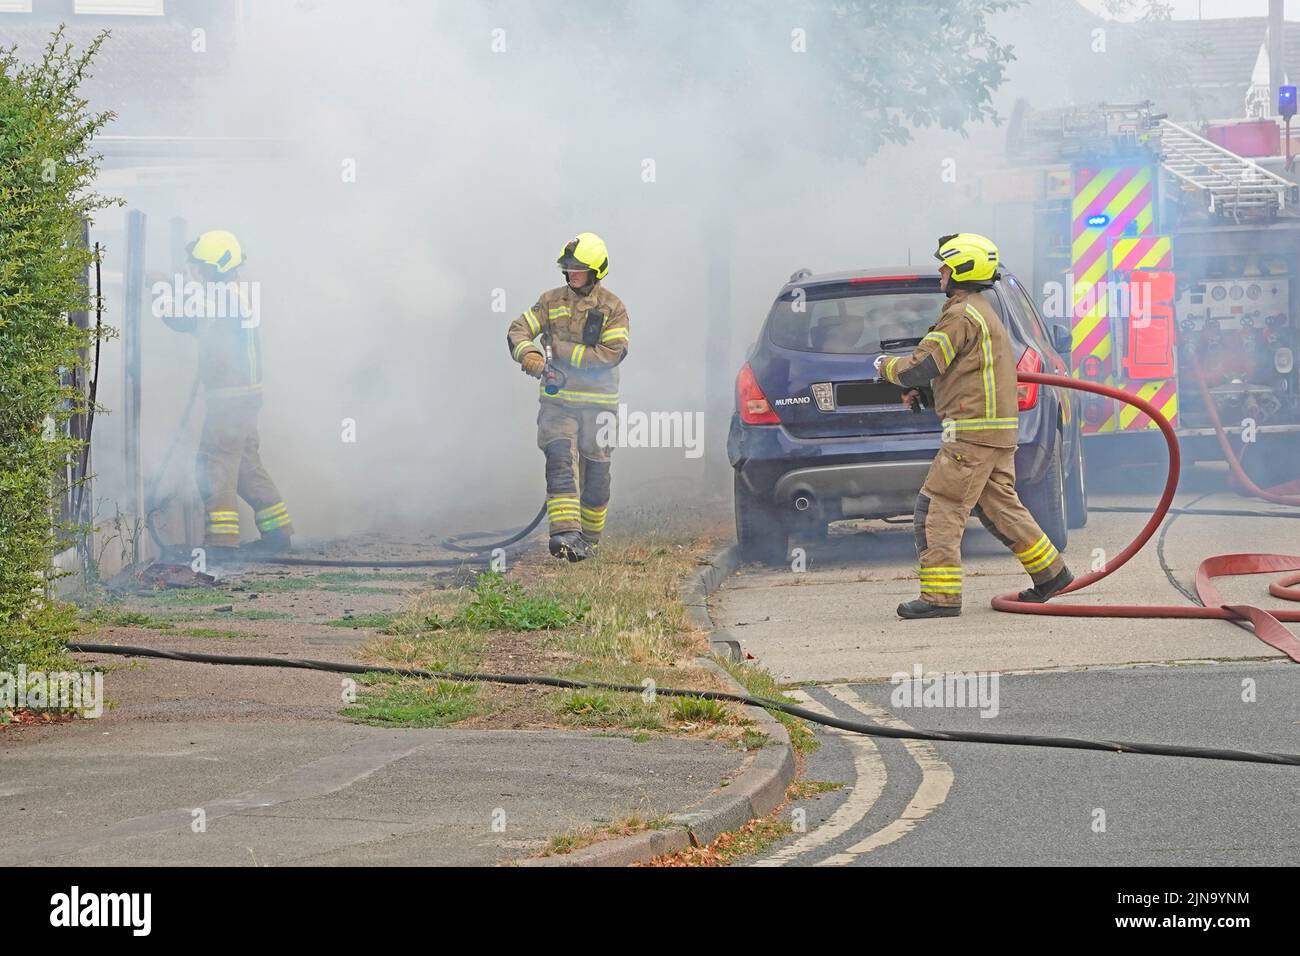 L'équipe du Service d'incendie et de sauvetage d'Essex a travaillé avec des pompiers dans des vêtements de protection travaillant dans des conditions dangereuses et dangereuses sur un incendie de maison Angleterre Royaume-Uni Banque D'Images